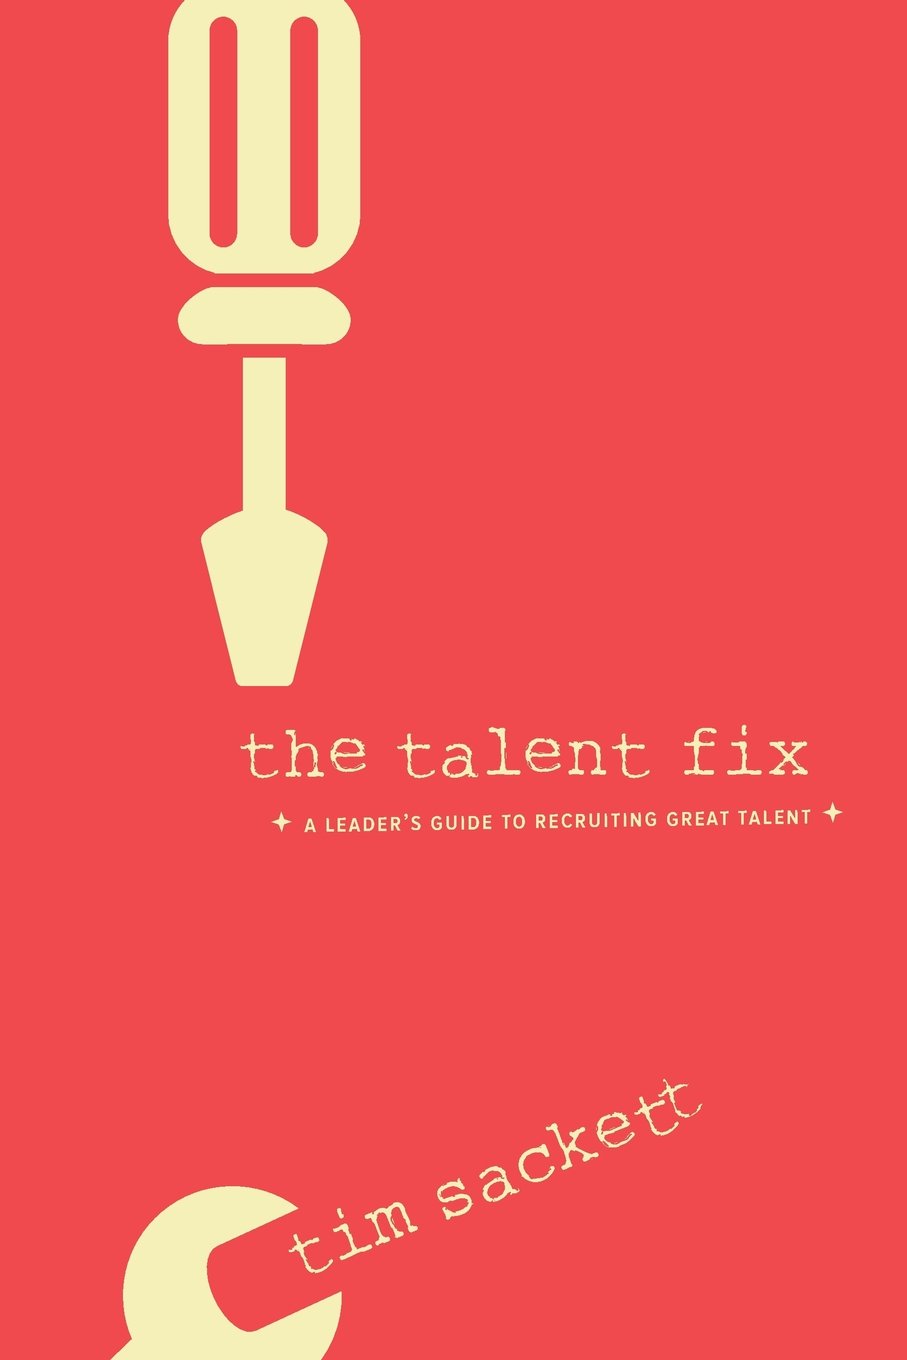 Résumé de "The Talent Fix" - Le niveau en recrutement est bas, à nous de l'améliorer